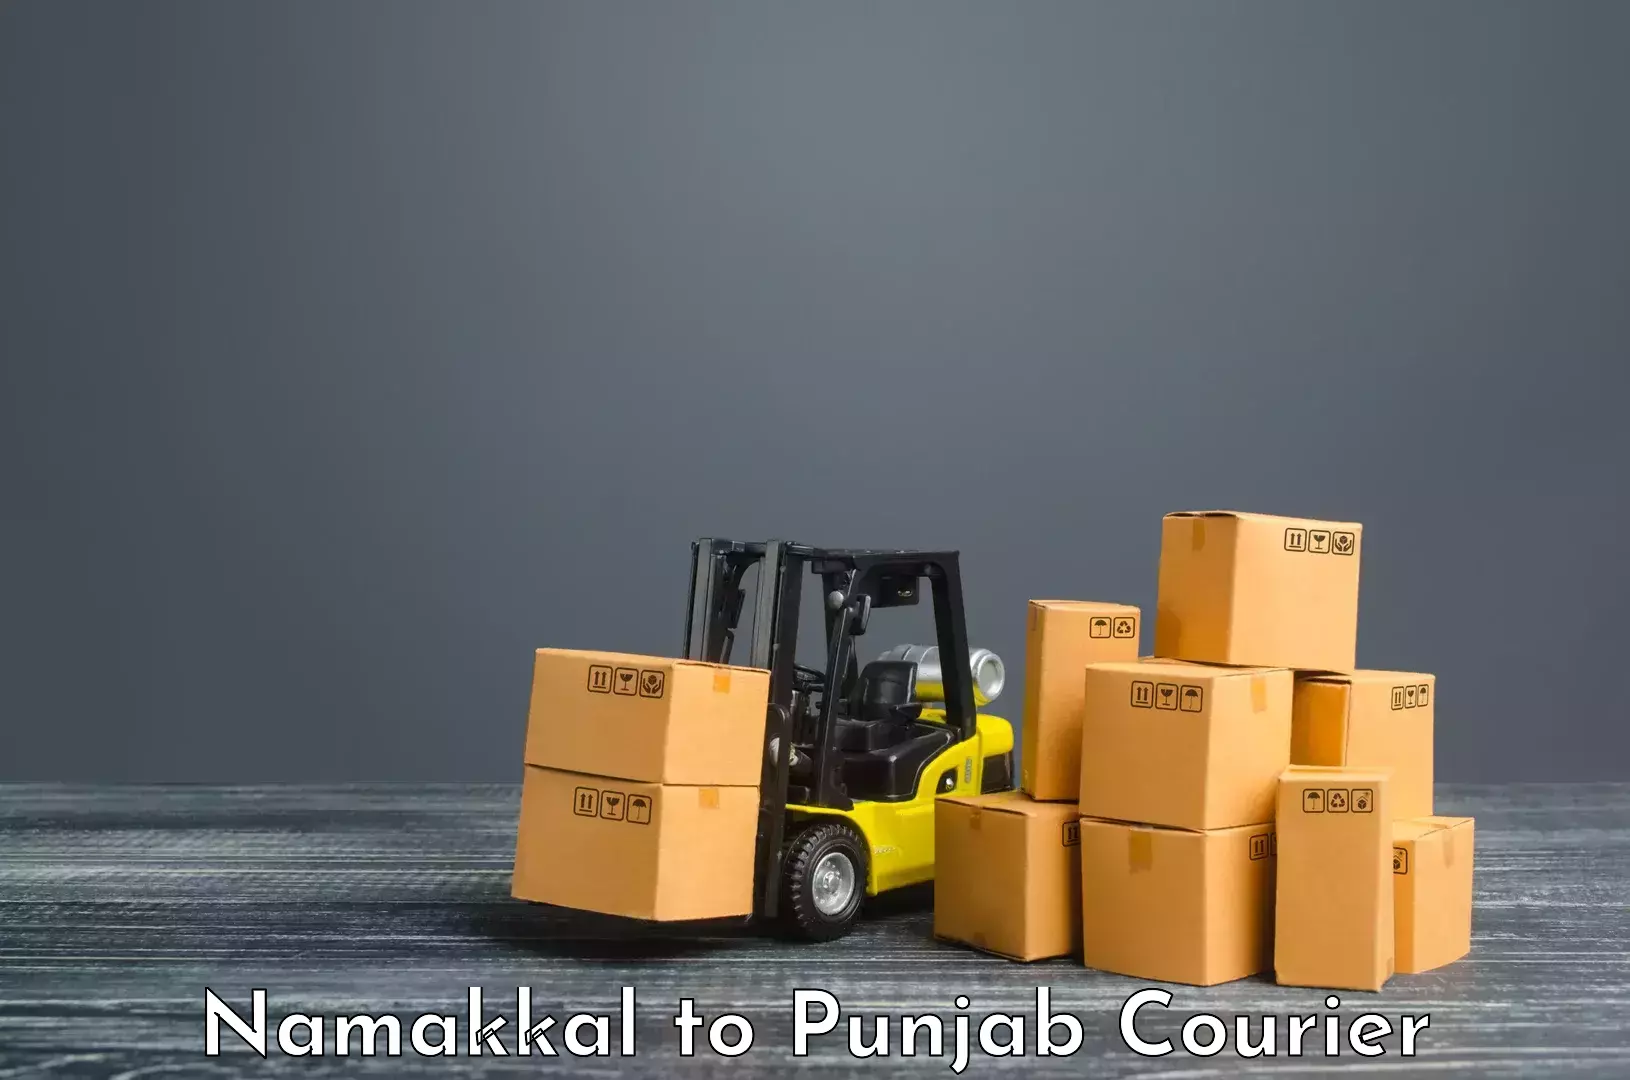 Modern courier technology Namakkal to Fazilka